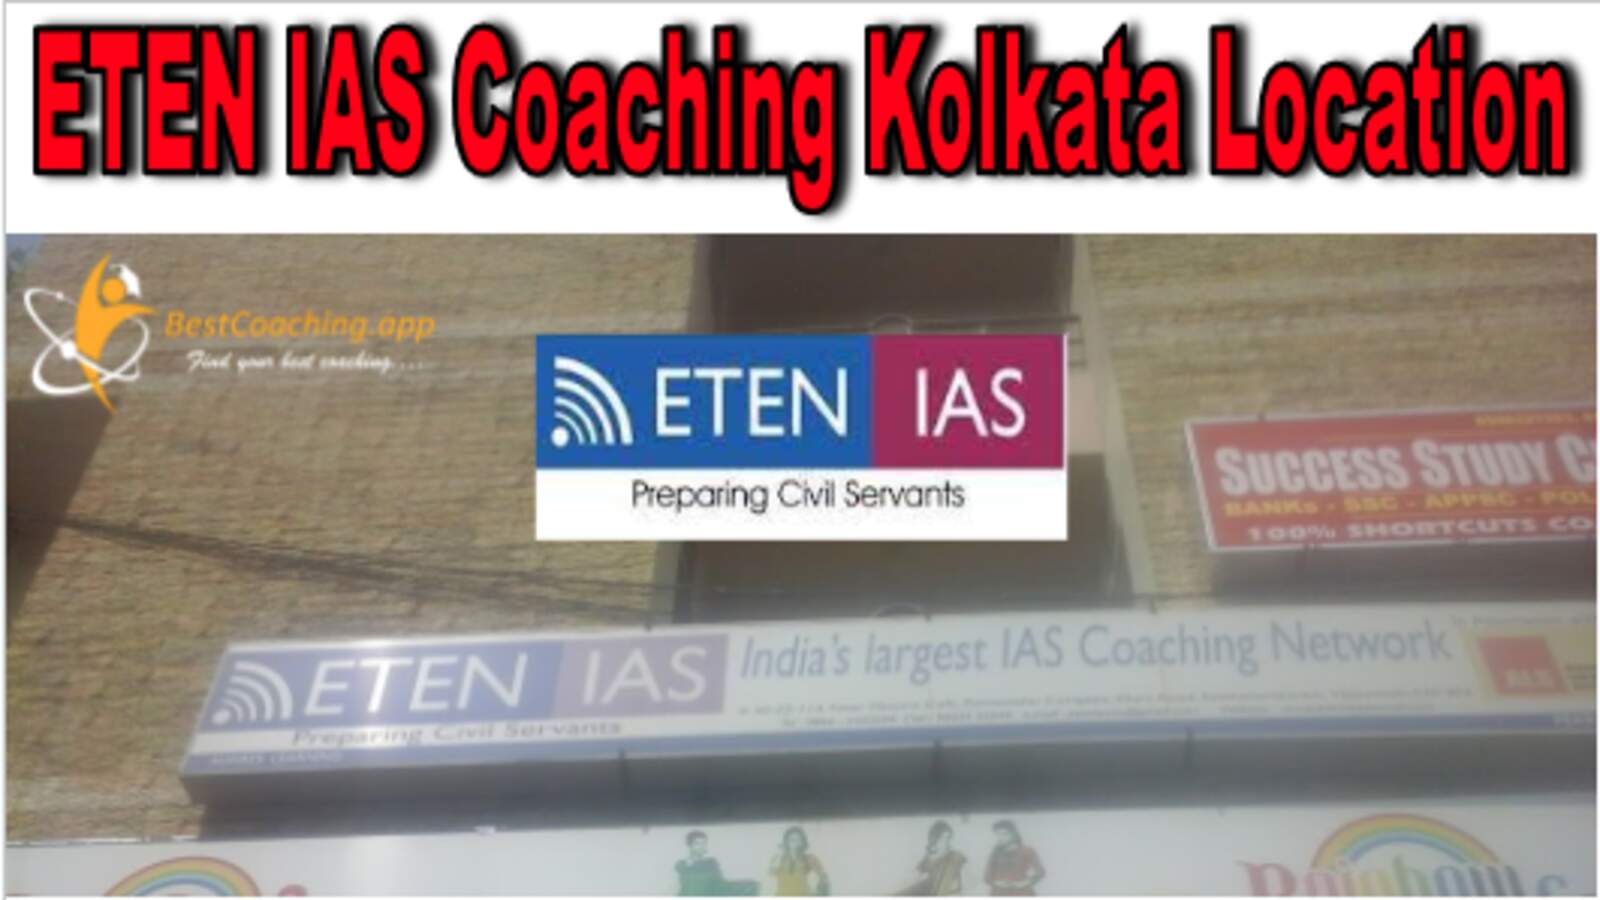 ETEN IAS Coaching Kolkata Location Review